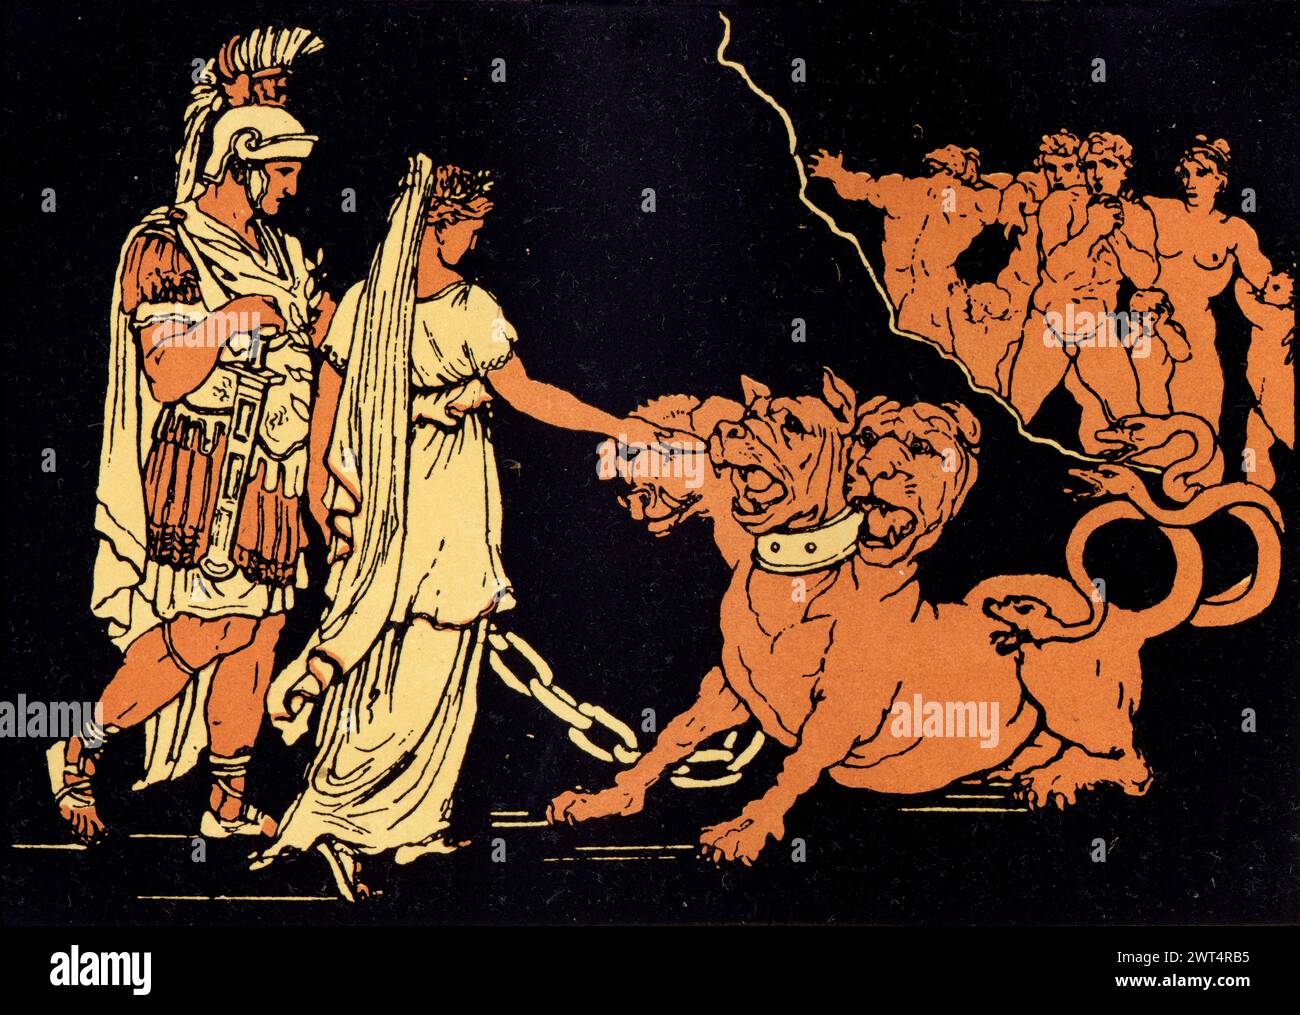 Vintage Illustration römische Mythologie, Cerberus, der Hund des Hades, Aeneid ein lateinisches Epos, das die legendäre Geschichte von Aeneas erzählt, einem Trojaner, der fl Stockfoto